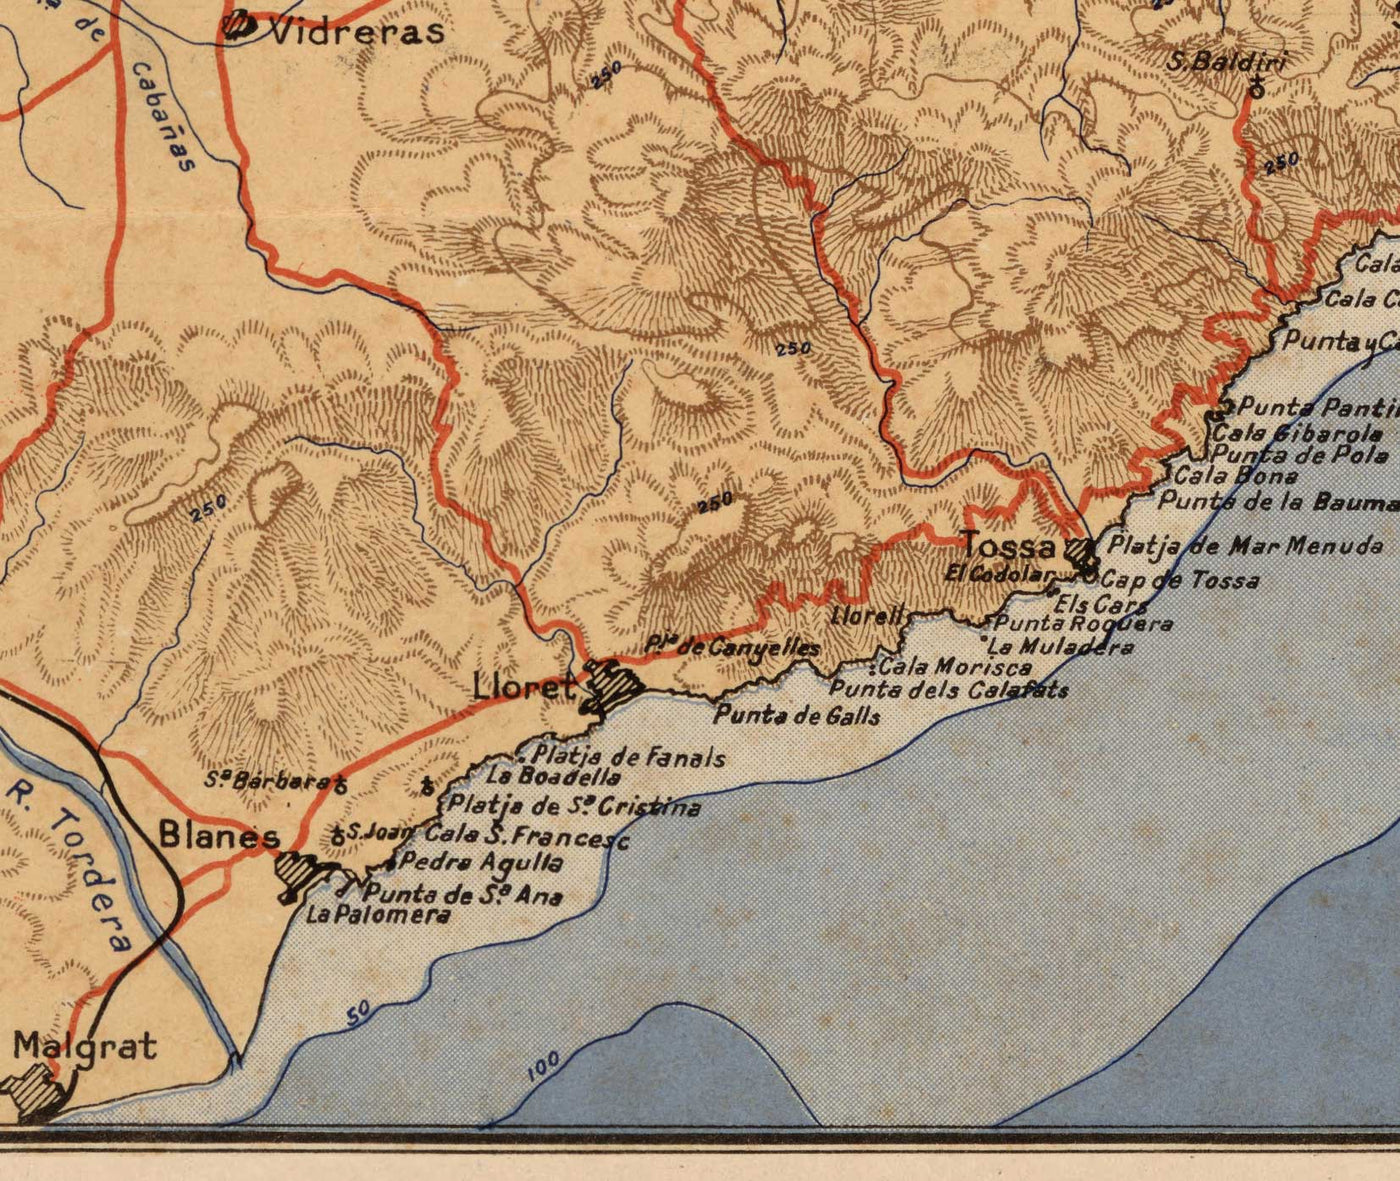 Ancienne carte de la Costa Brava par Dolcet en 1950 - Gérone, Figueres, Tossa de Mar, Lloret de Mar, Blanes